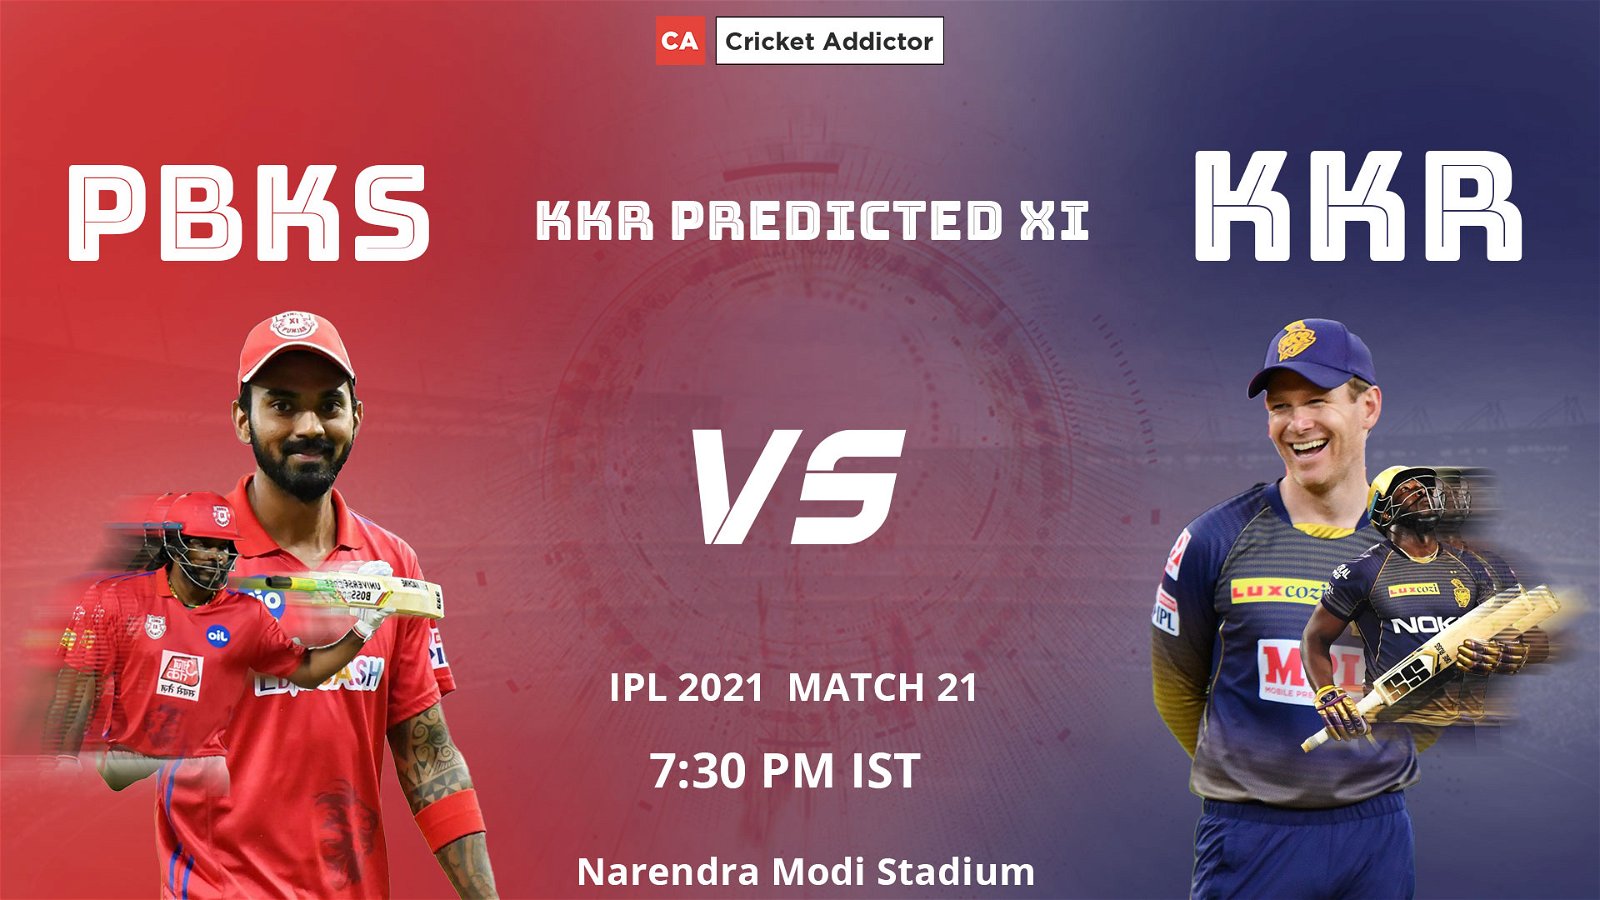 IPL 2021, Kolkata Knight Riders, KKR, PBKS vs KKR, predicted playing XI, playing XI